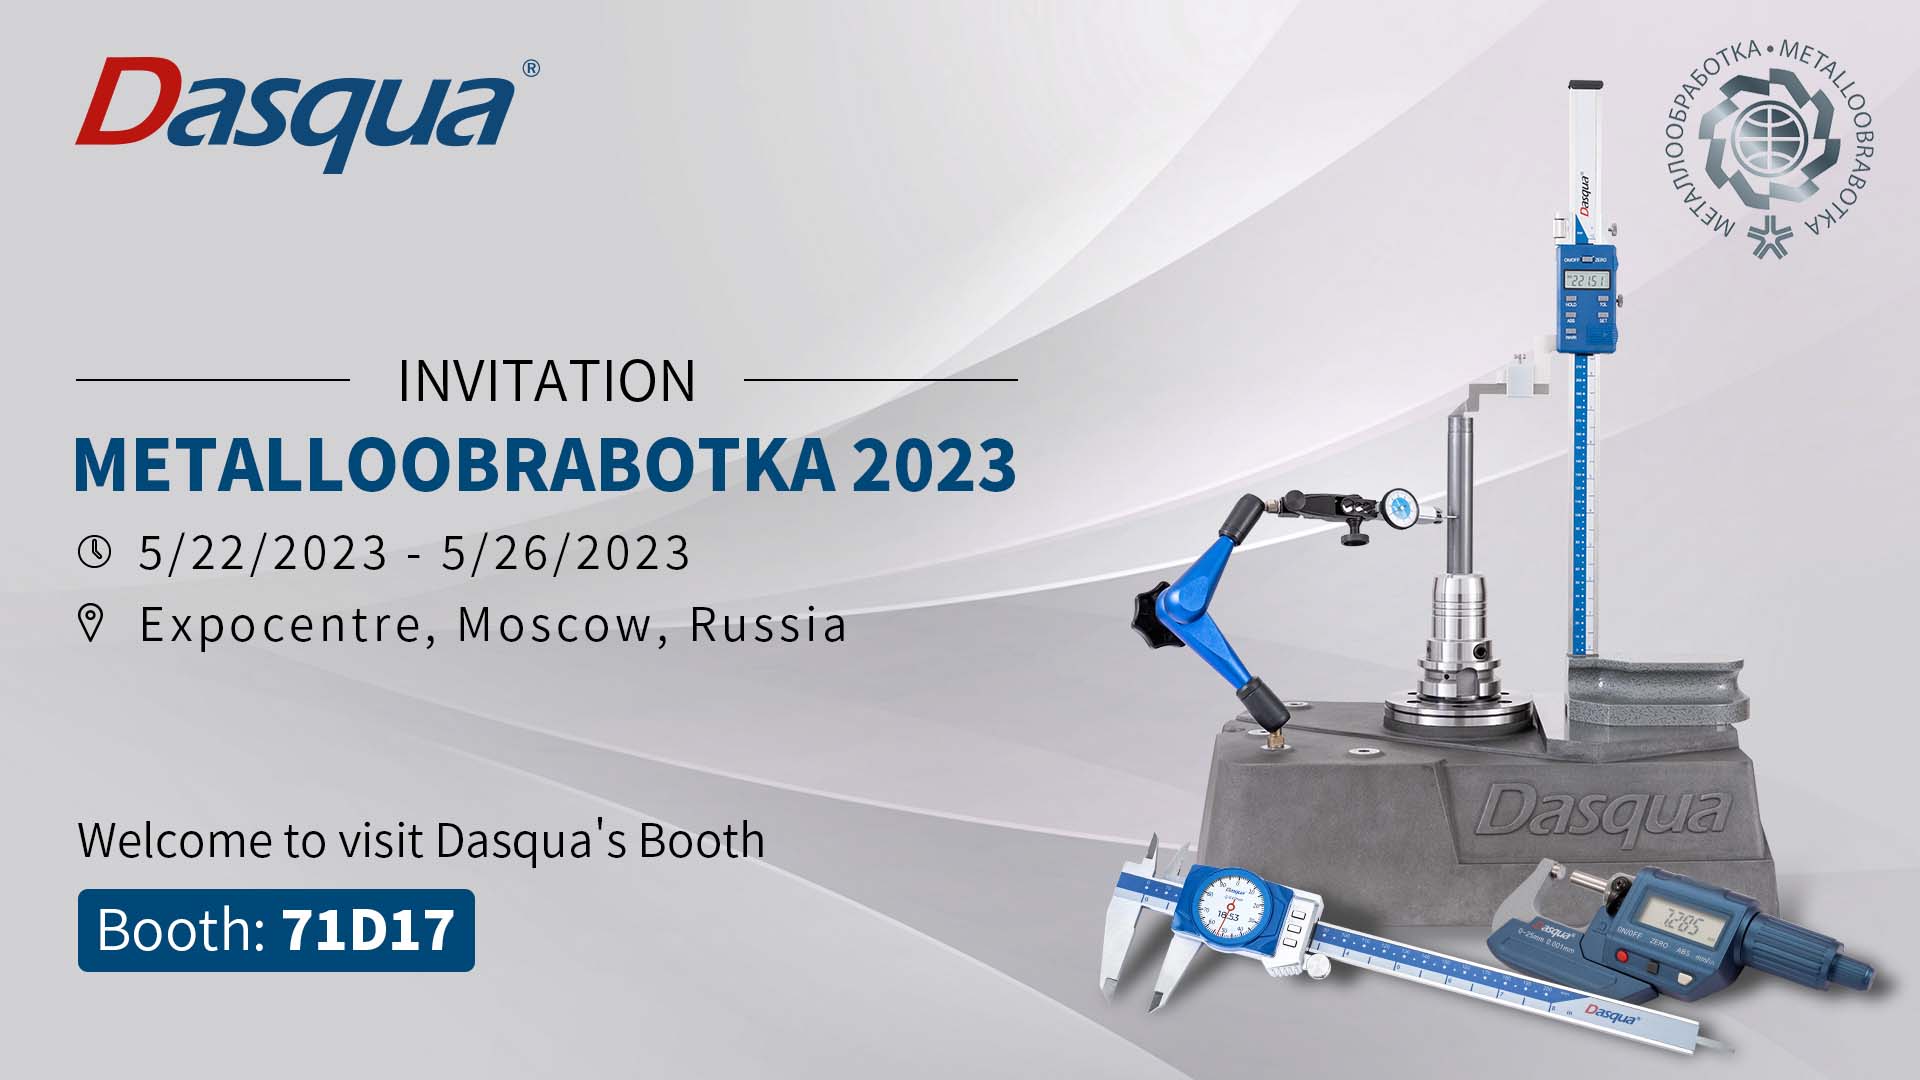 The 23th Metalloobrabotka Moscow - Pameran Internasional pikeun Téknologi Pangolah Bahan, Mesin sareng Alat